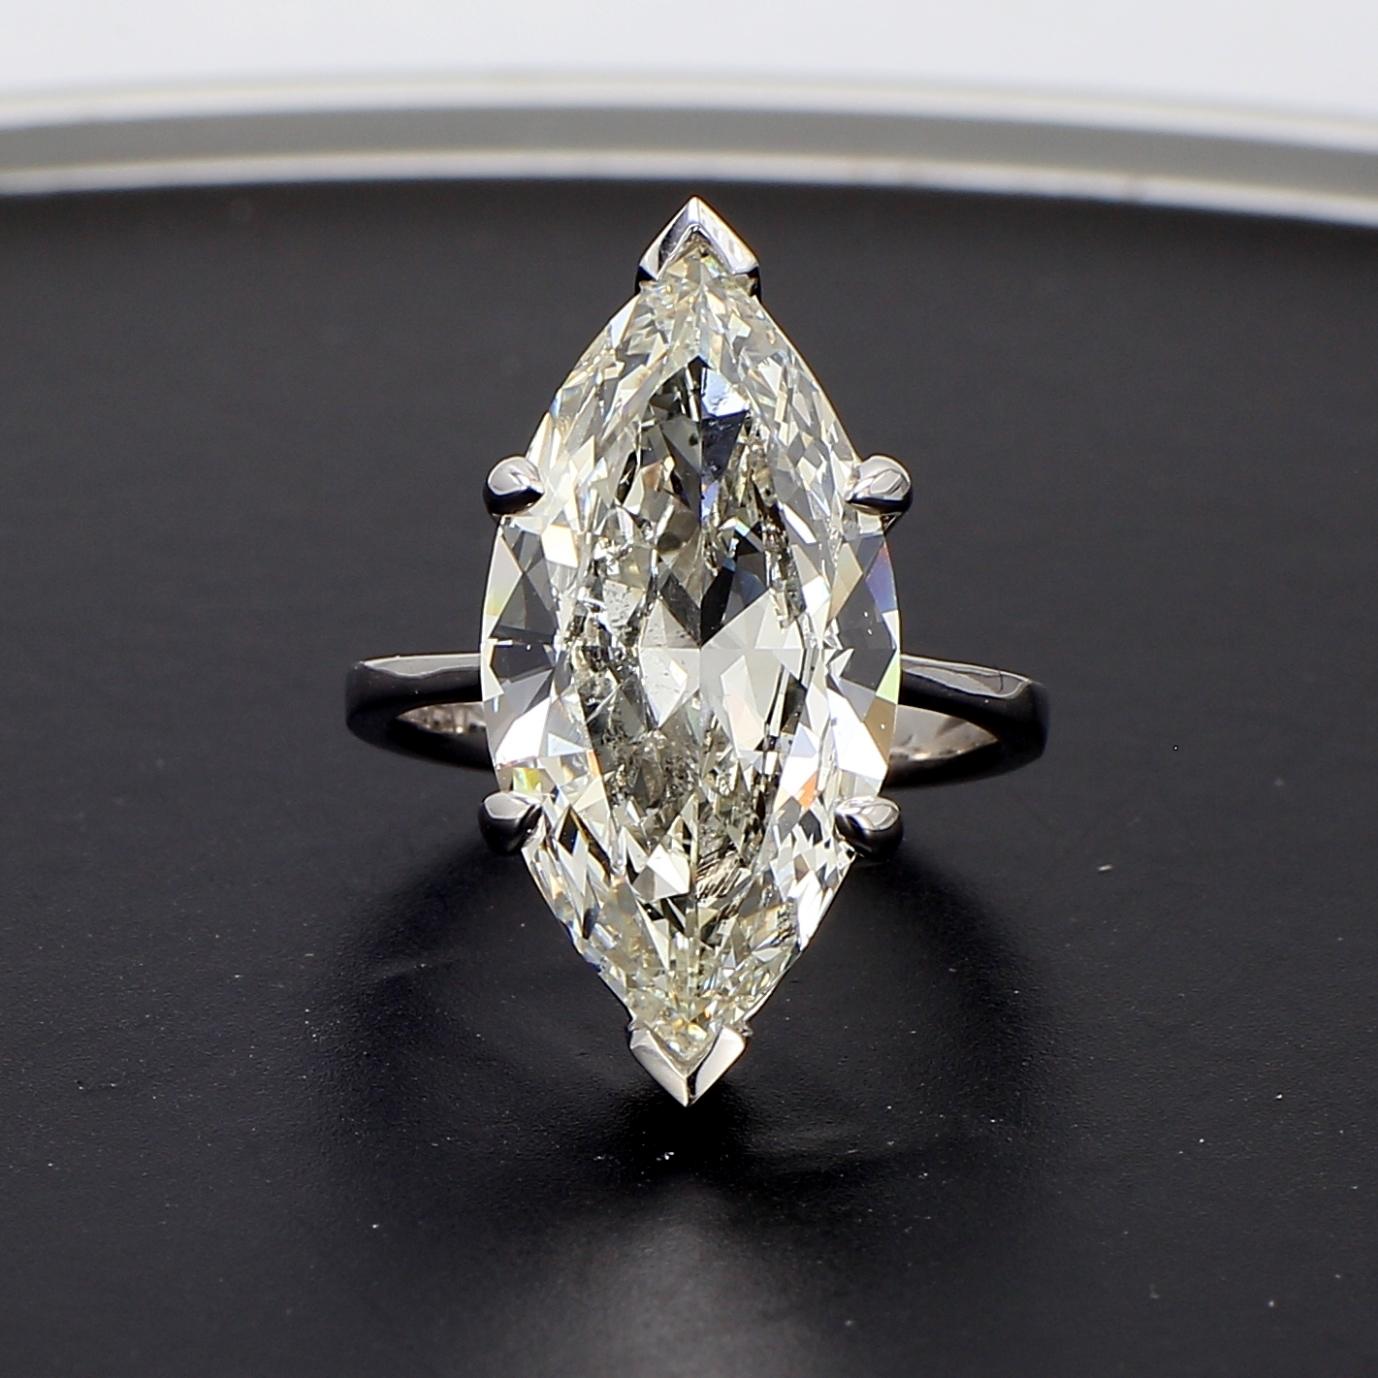 Le diamant de forme marquise aurait été commandé par le roi Louis X1V de France. La légende rapporte que le roi demanda une pierre qui lui rappellerait la forme parfaite de la bouche et du sourire de son grand amour, la marquise de Pompadour, d'où